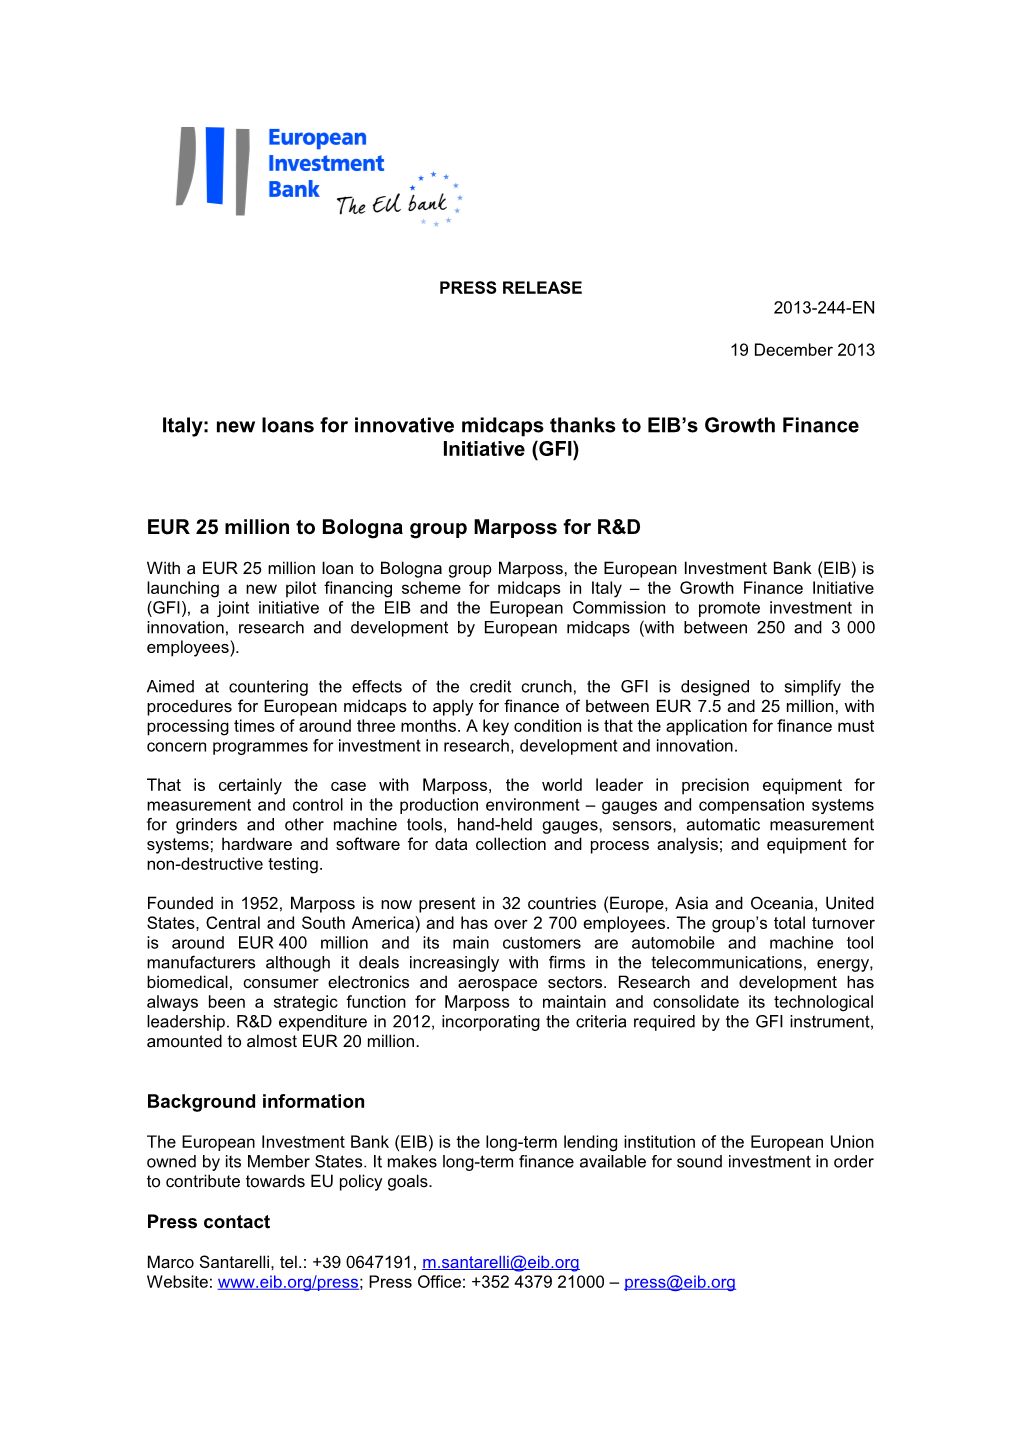 Italia: Con La Growth Finance Initiative (GFI) Nuovi Prestiti Della BEI Per Le Mid-Cap